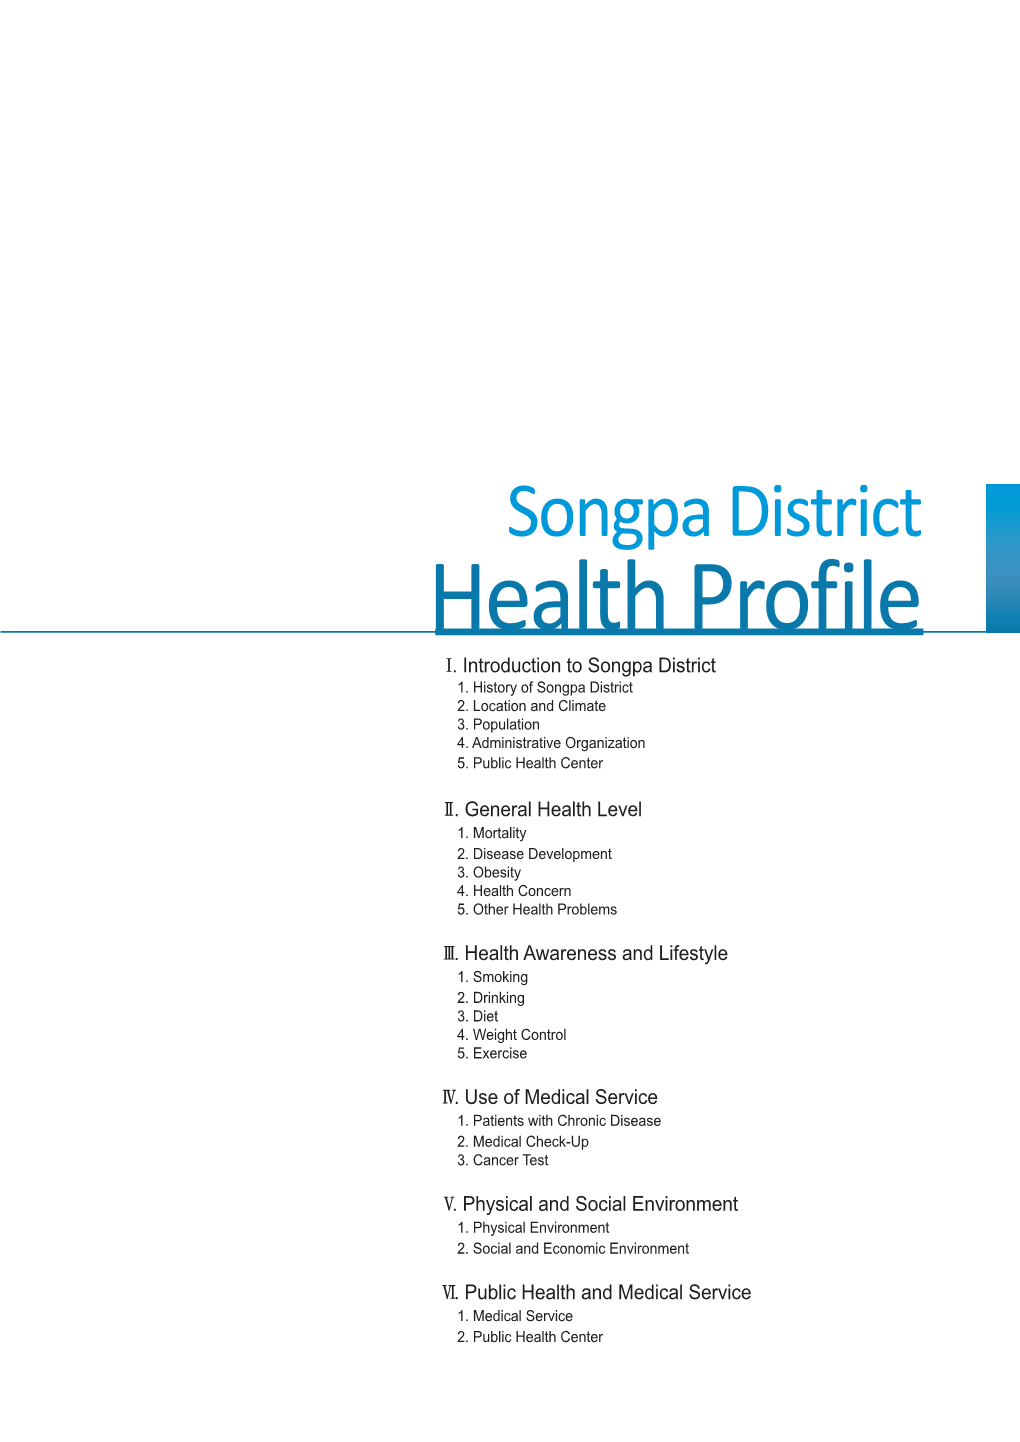 Health Profile Ⅰ